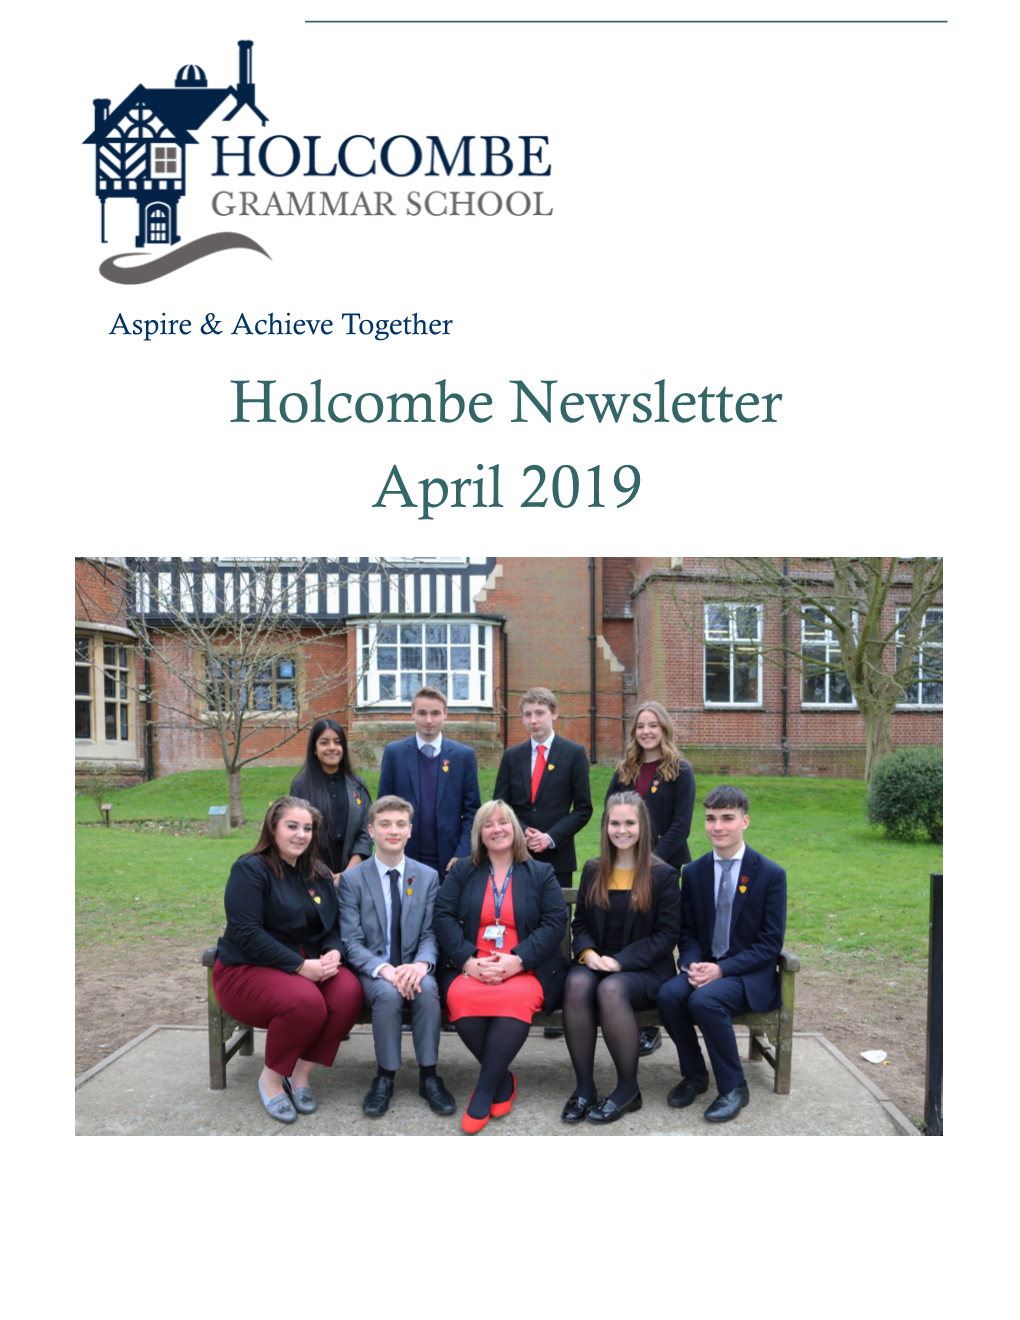 April 2019 Holcombe Newsletter